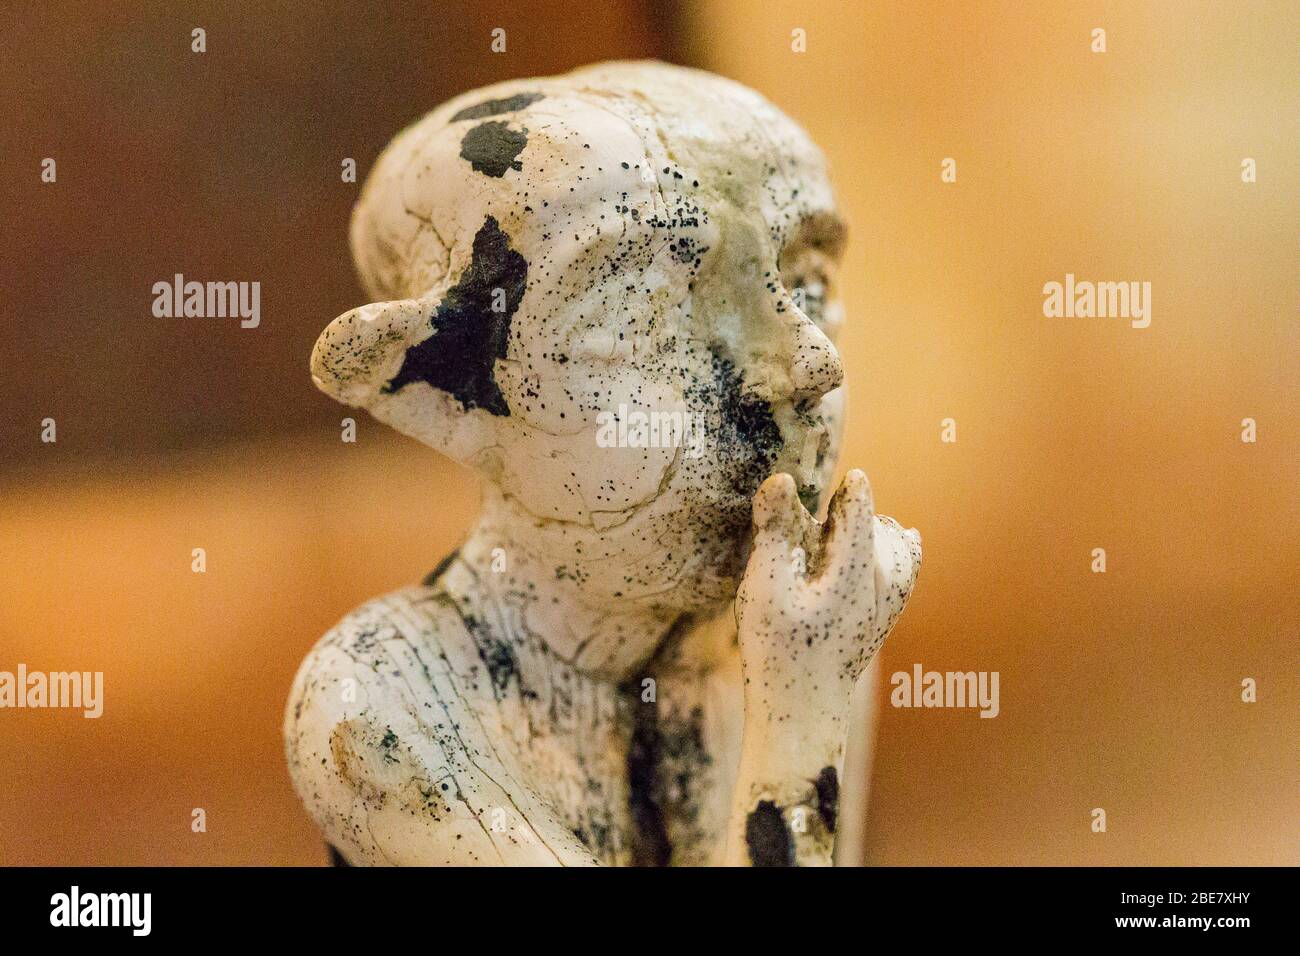 Egitto, Cairo, Museo Egizio, statuette provenienti da Tell el Farkha, periodo dinastico, in hippopotamus tusk. Ragazzo seduto. Foto Stock